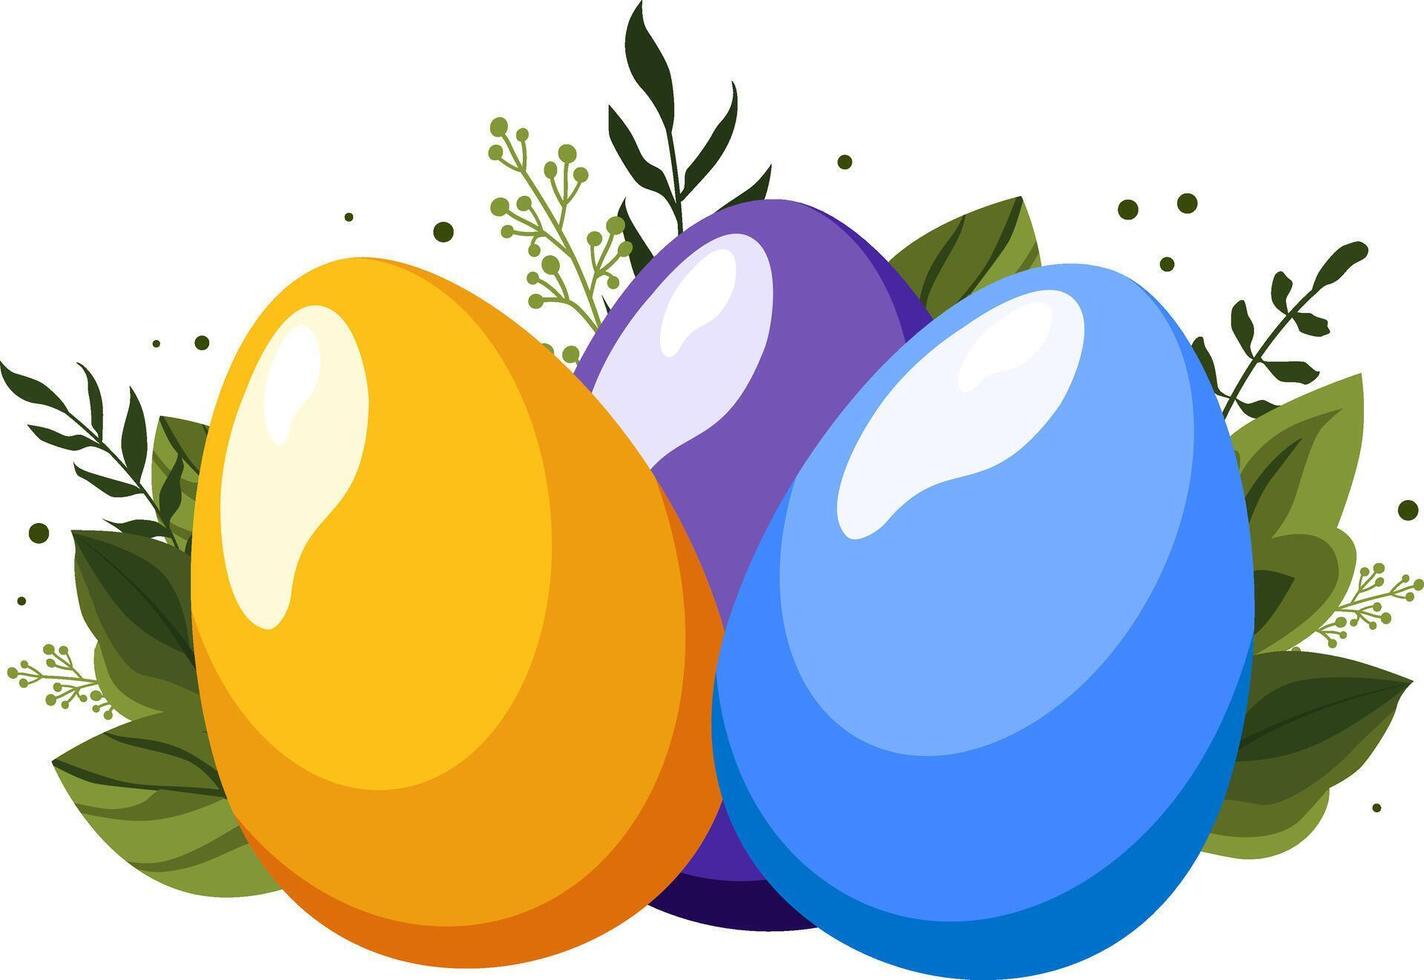 giallo blu Pasqua uova con verde le foglie e rami su sfondo. illustrazione nel piatto stile. vettore clipart per design di saluto carta, vacanza striscione, volantino, saldi, manifesto, icone